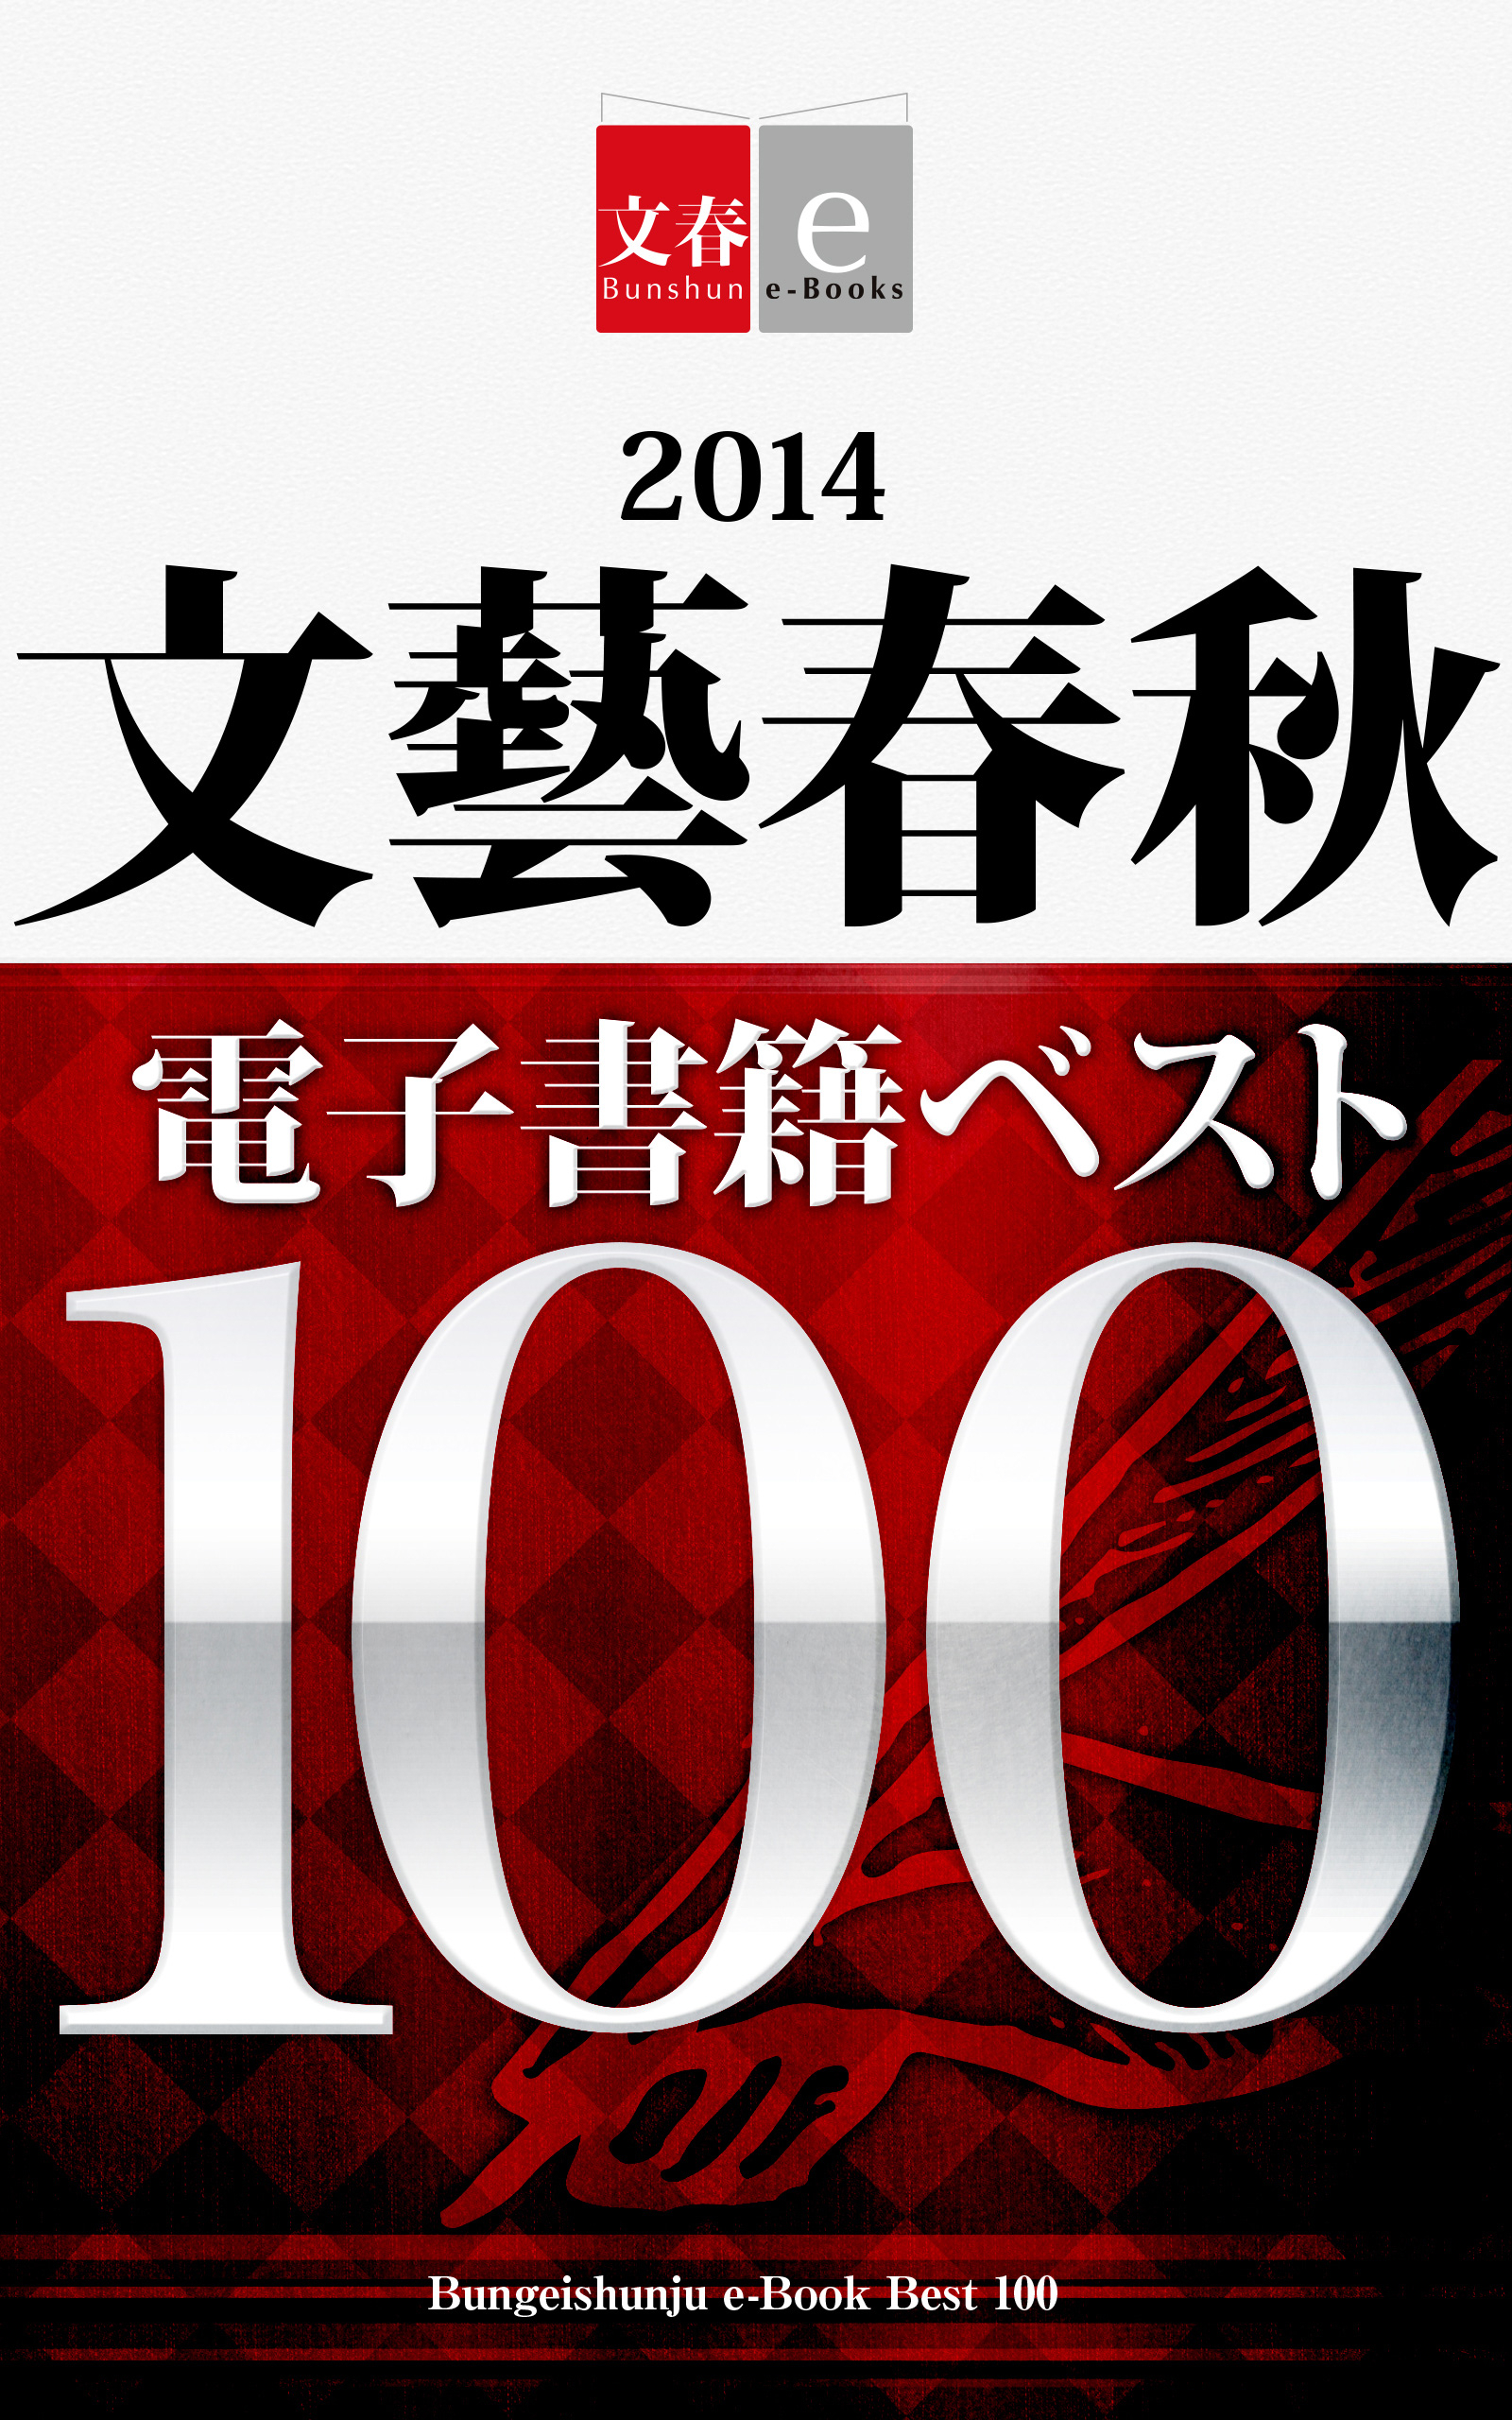 文藝春秋が 電子書籍ベスト100 を無料配信 今年最も売れたうちの電子書籍はこれだ Itmedia Ebook User